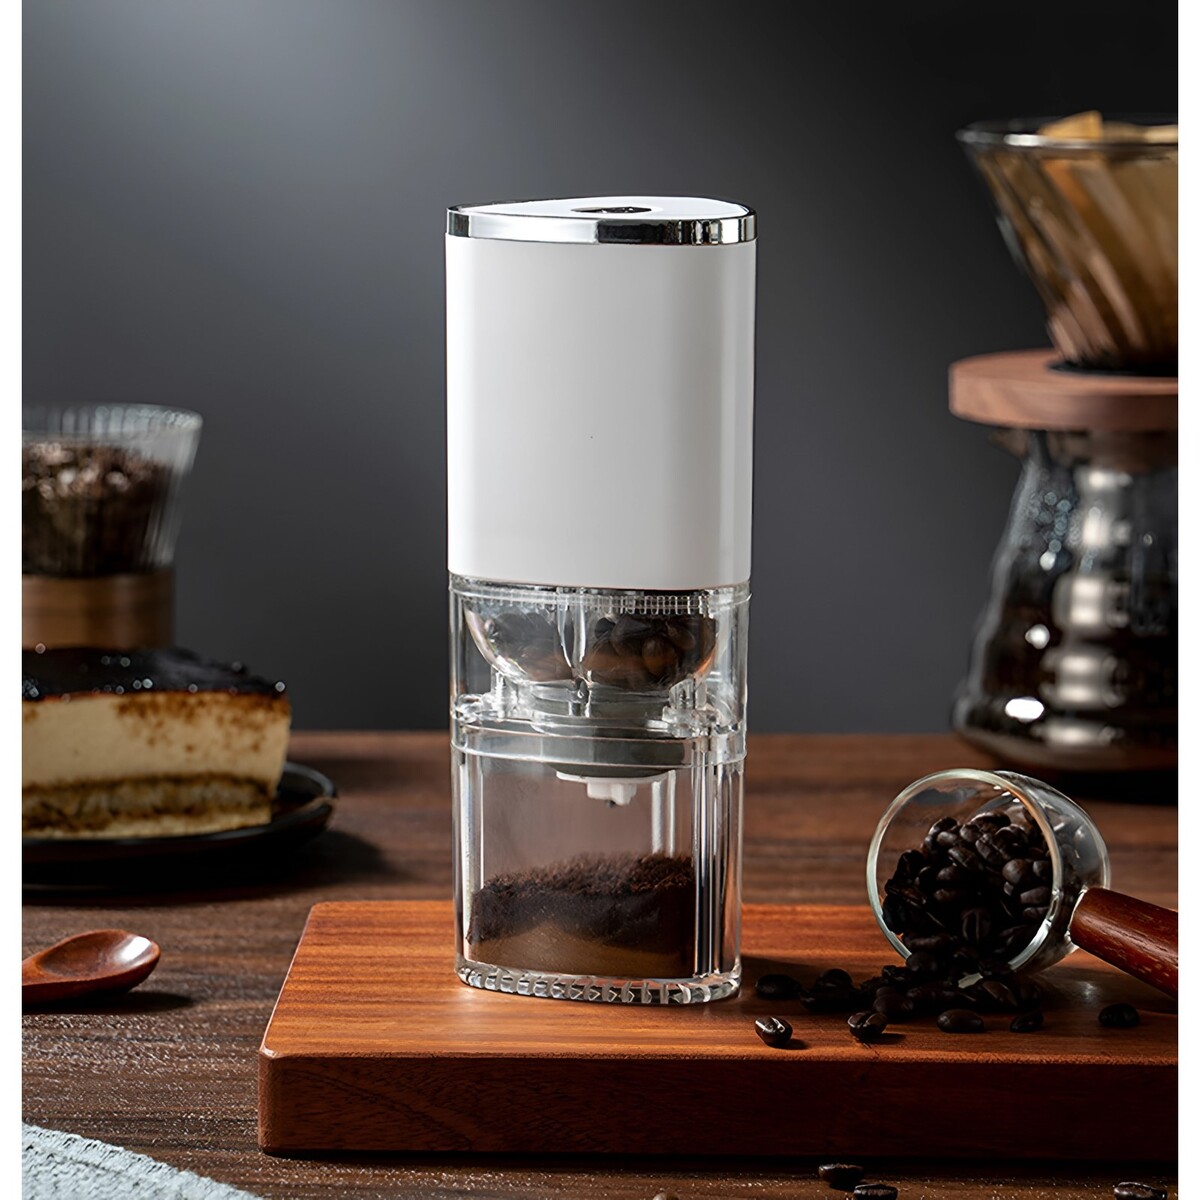 Портативная электрическая кофемолка lcg-05, 1500 ма/ч, 13 вт, 25 грамм, белая кофемолка galaxy gl 0907 электрическая ножевая 200 вт 50 г чёрная